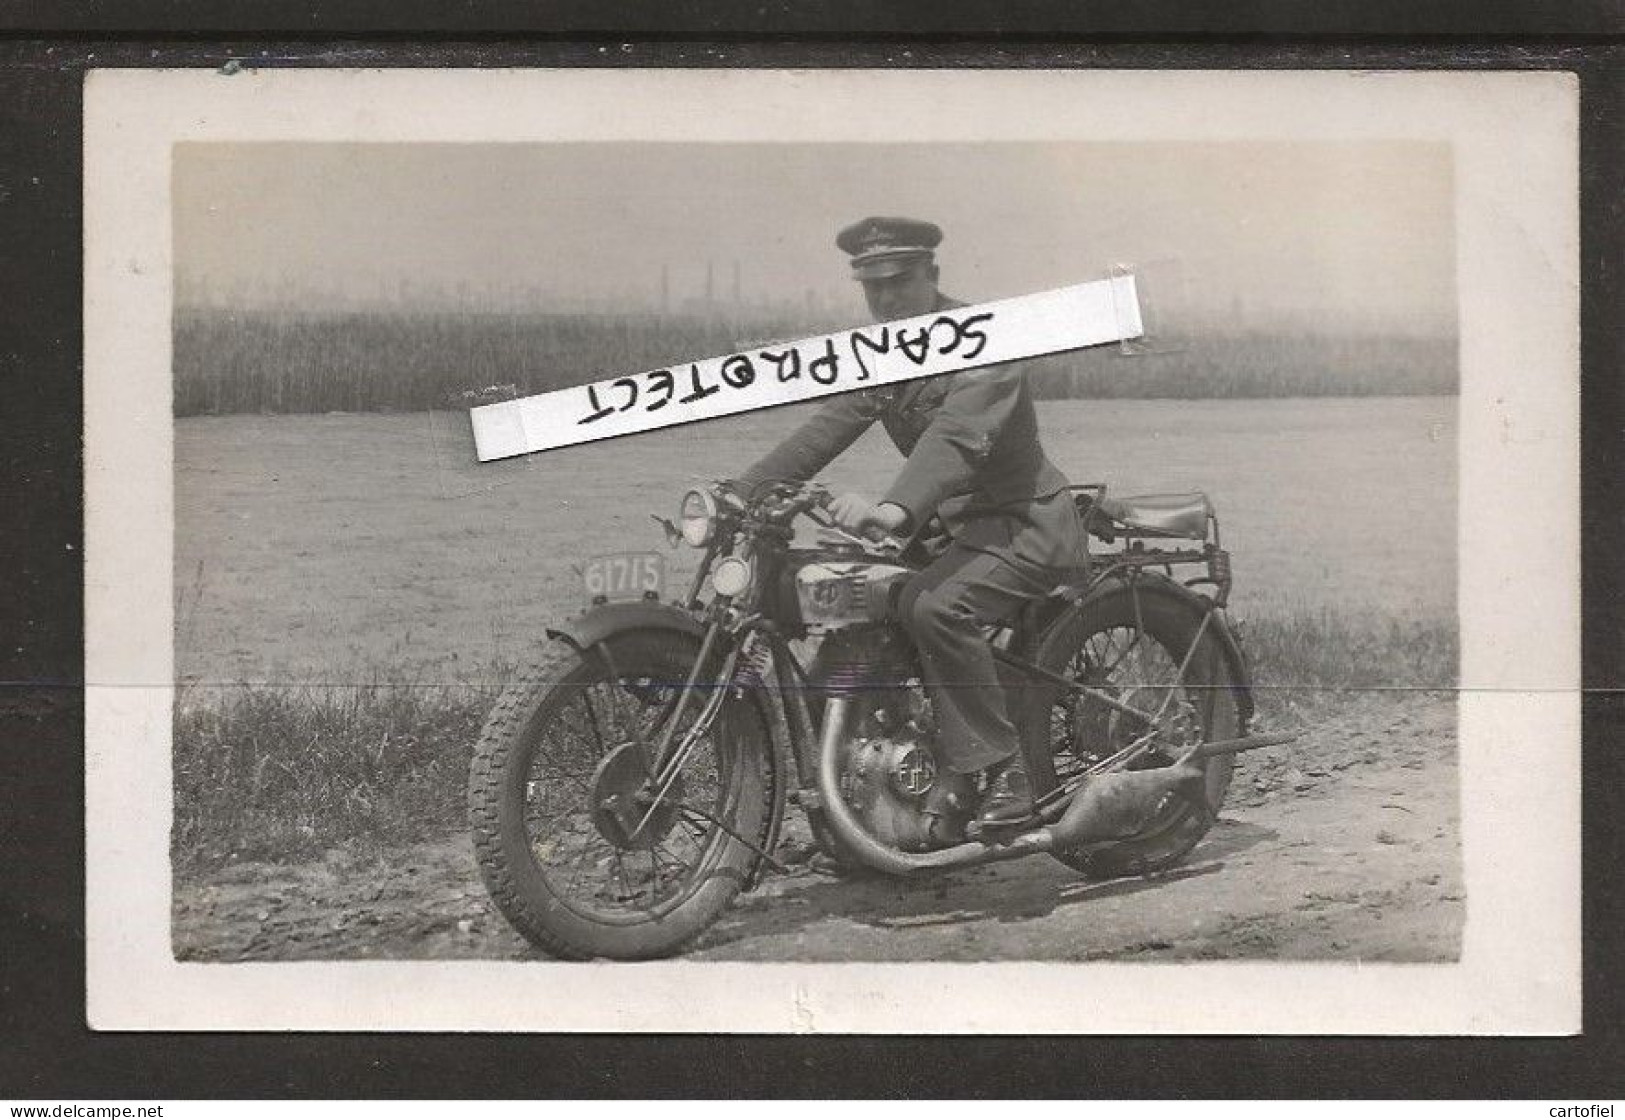 TIENEN-FOTOKAART-PILOOT-UNIFORM-FOX-HISPANO-MOTO-MOTOCYCLETTE-FN-M90-SUIKERFABRIEK-GEDATEERD-1934-UNIEK-ZIE DE 3 SCANS - Tienen